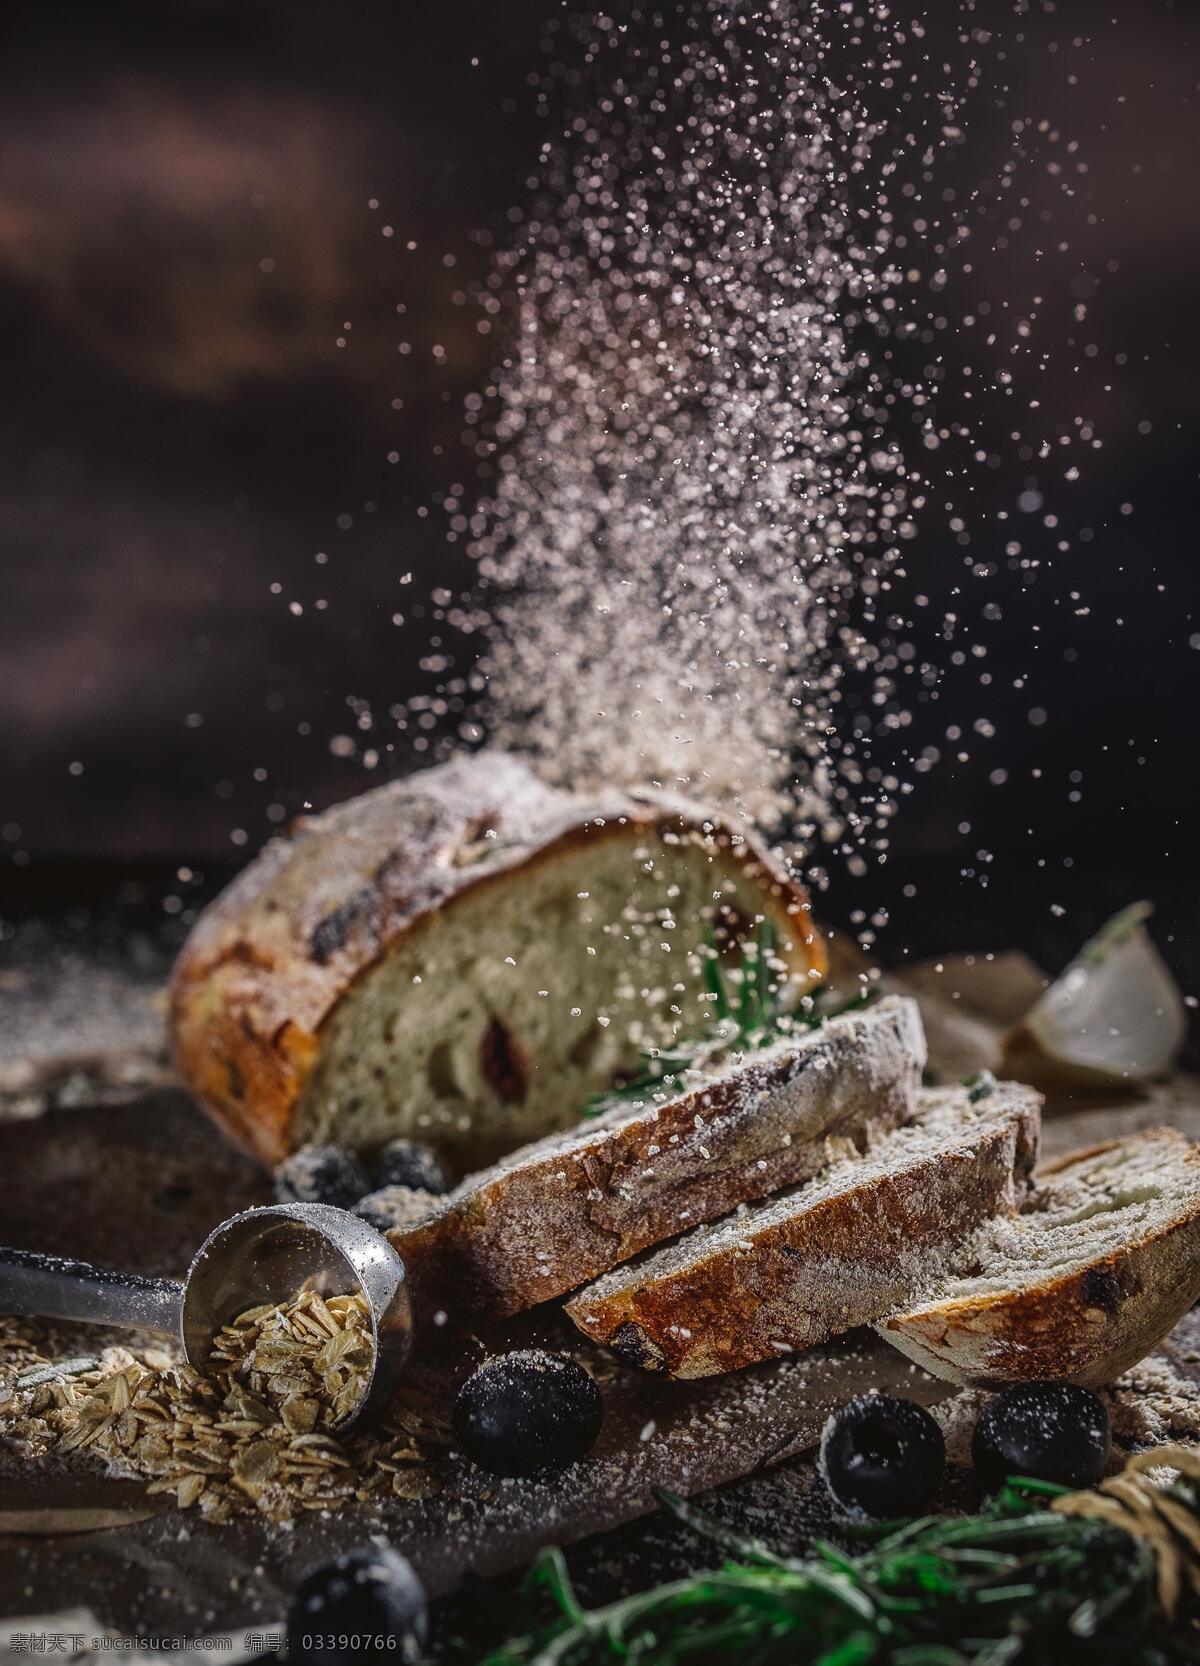 面包 面包切片 面包摄影 面包高清图 面包大图 面包素材 美食素材 美食海报素材 餐饮美食